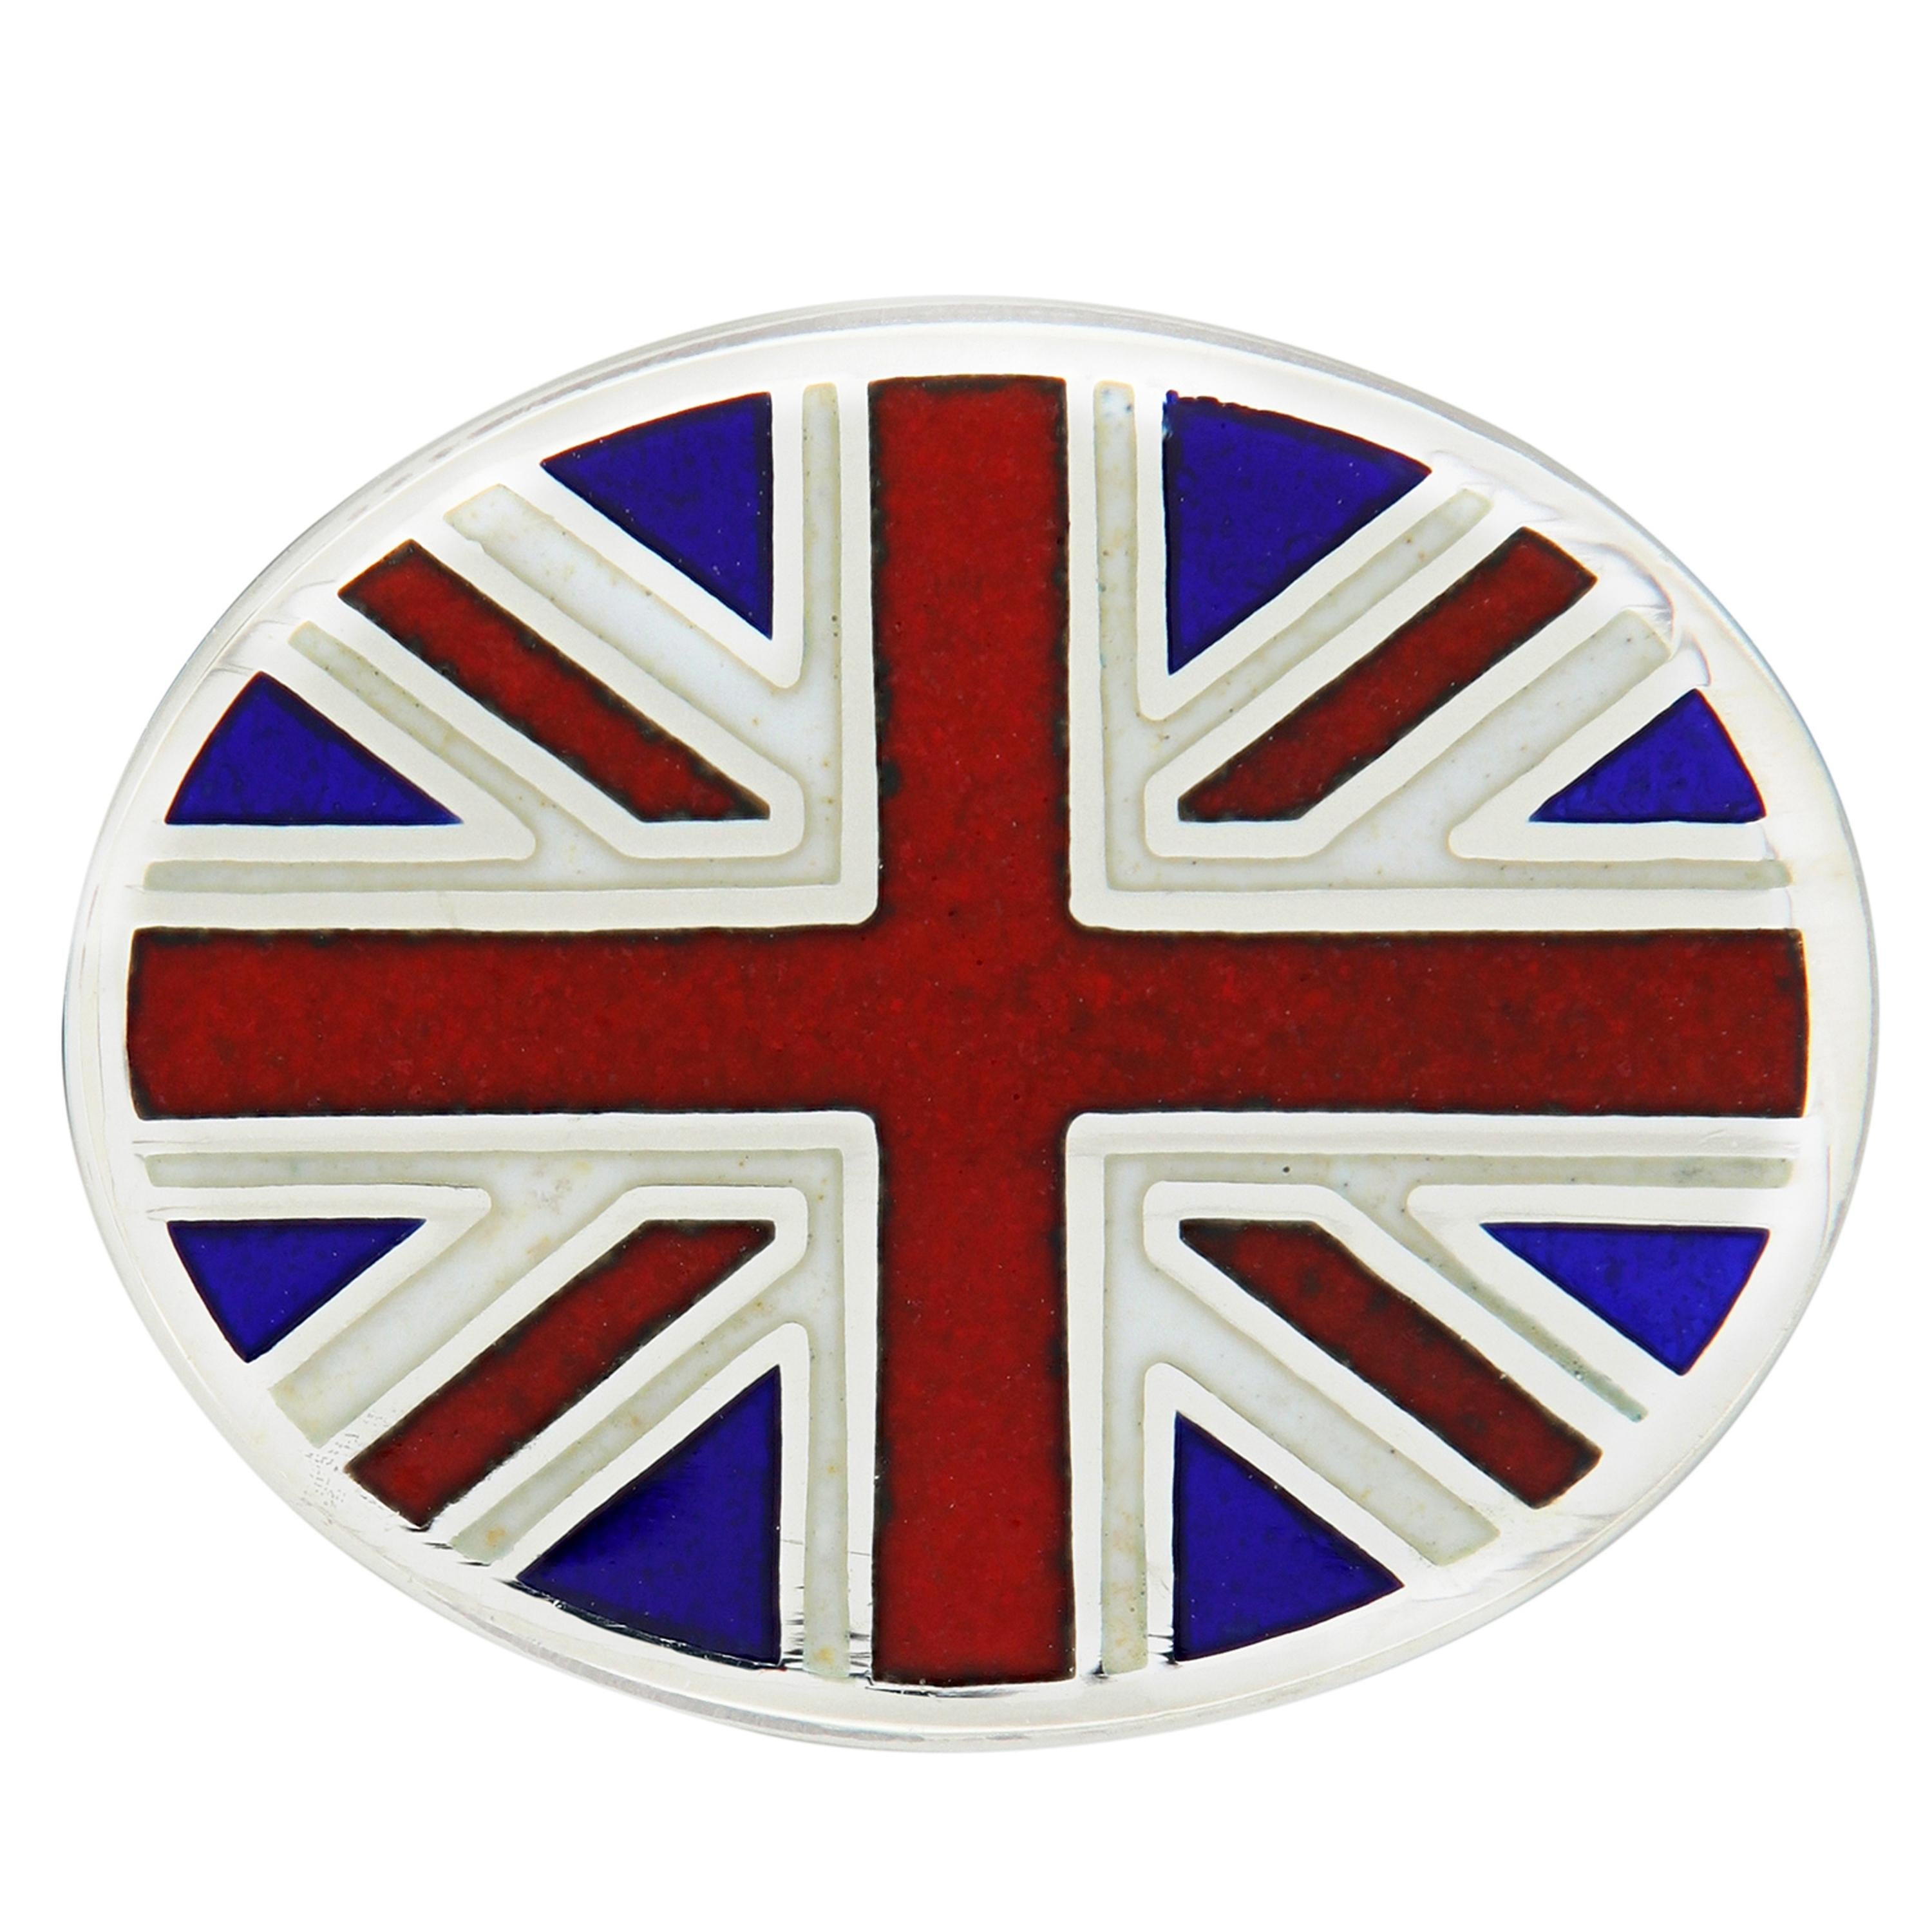 Schöne Manschettenknöpfe mit Guilloche-Emaille im Union Jack Design. Handgefertigt in England für 
Campanelli & Pear. Wiegt 12,6 Gramm. Das Oval misst 14 mm x 19 mm.